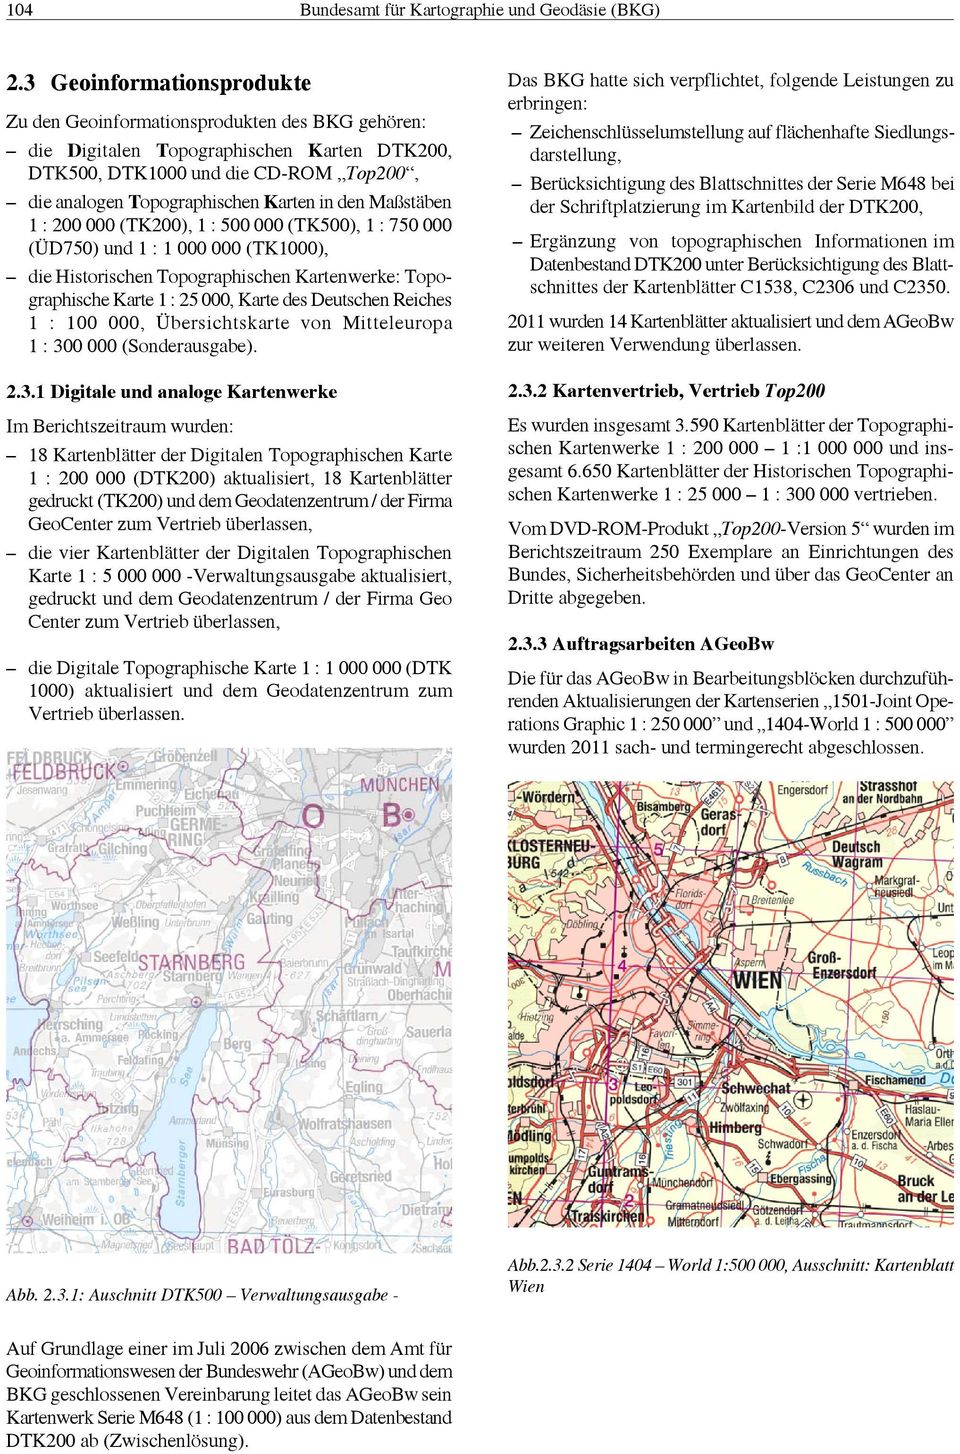 den Maßstäben 1 : 200 000 (TK200), 1 : 500 000 (TK500), 1 : 750 000 (ÜD750) und 1 : 1 000 000 (TK1000), die Historischen Topographischen Kartenwerke: Topographische Karte 1 : 25 000, Karte des